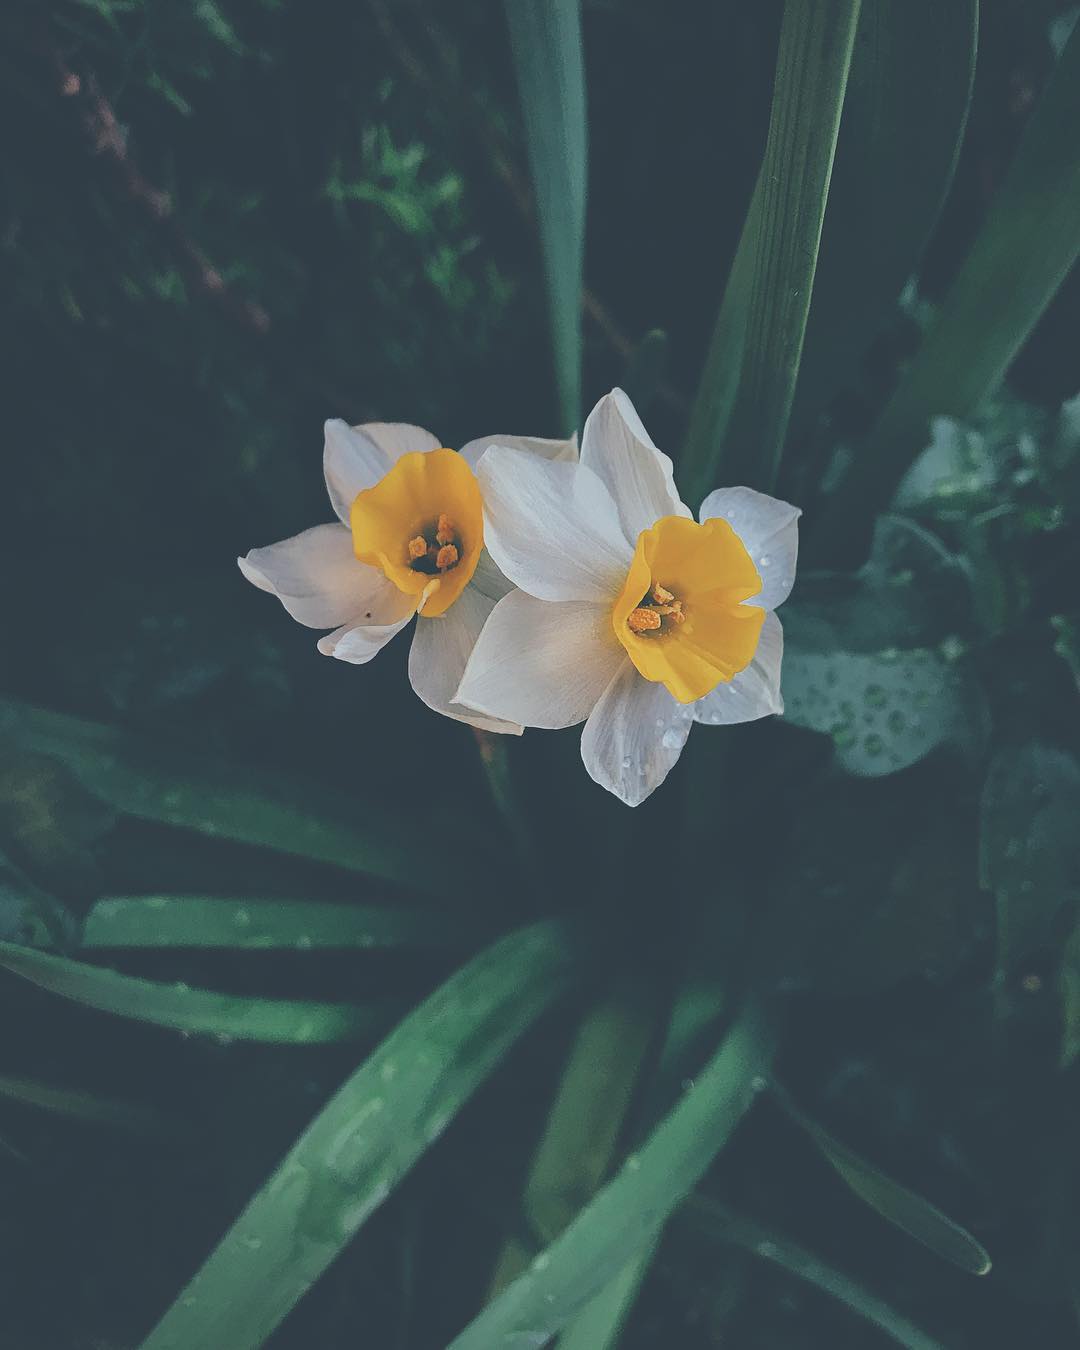 White narcissus flower